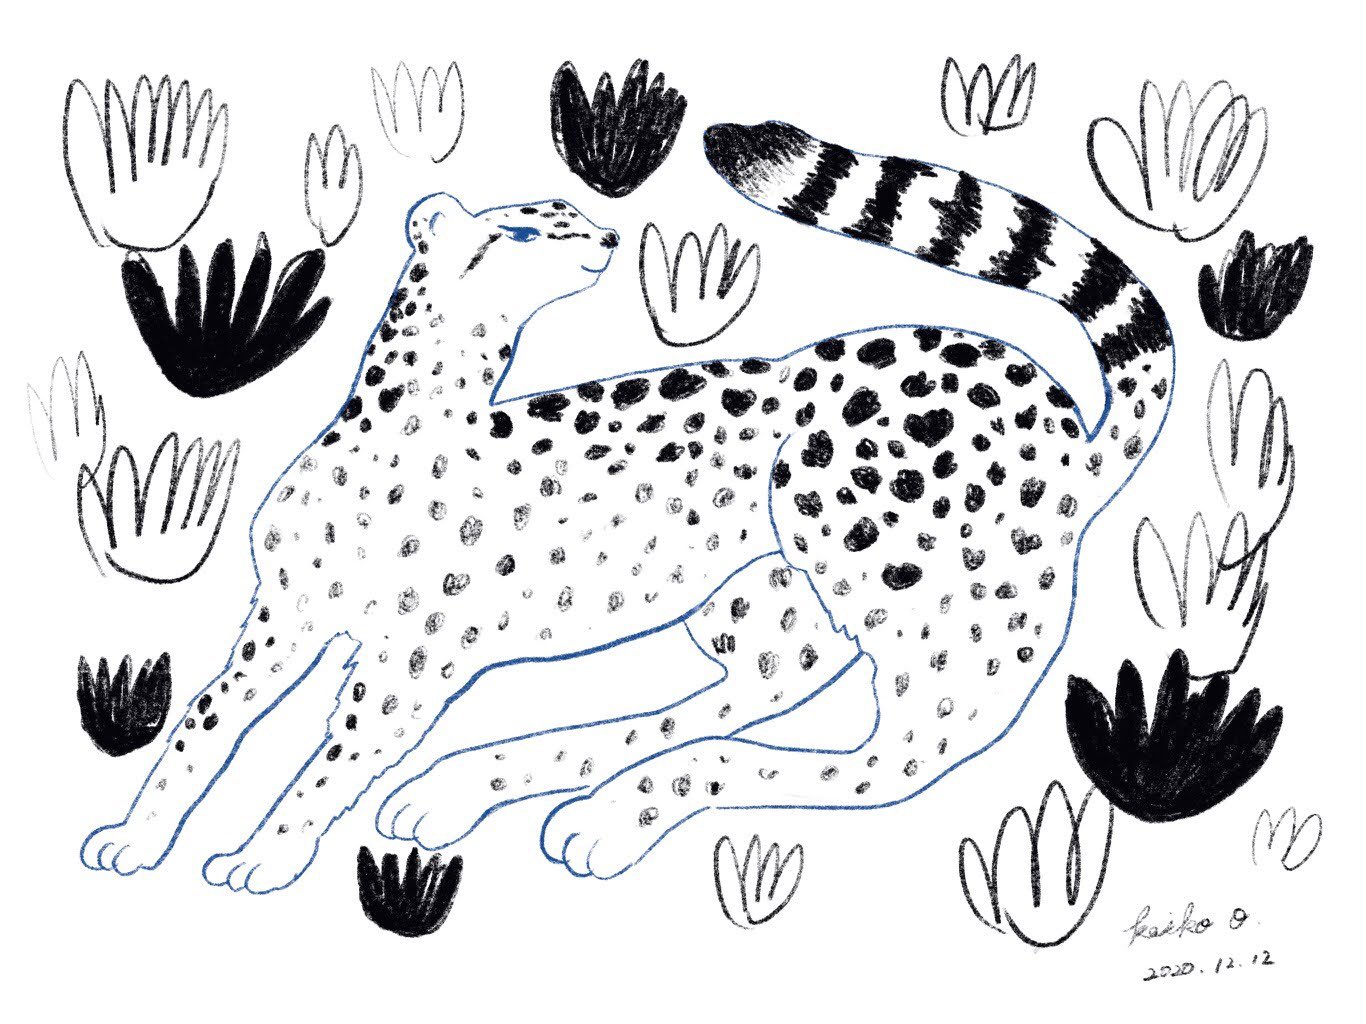 Keiko Omama Feel Illustration Sketch イラスト スケッチ 絵 チーター Cheetah ネコ科 大きな猫 Feel Ipadpro Applepencil Procreate プロクリエイト T Co Yfwzr4e22c Twitter